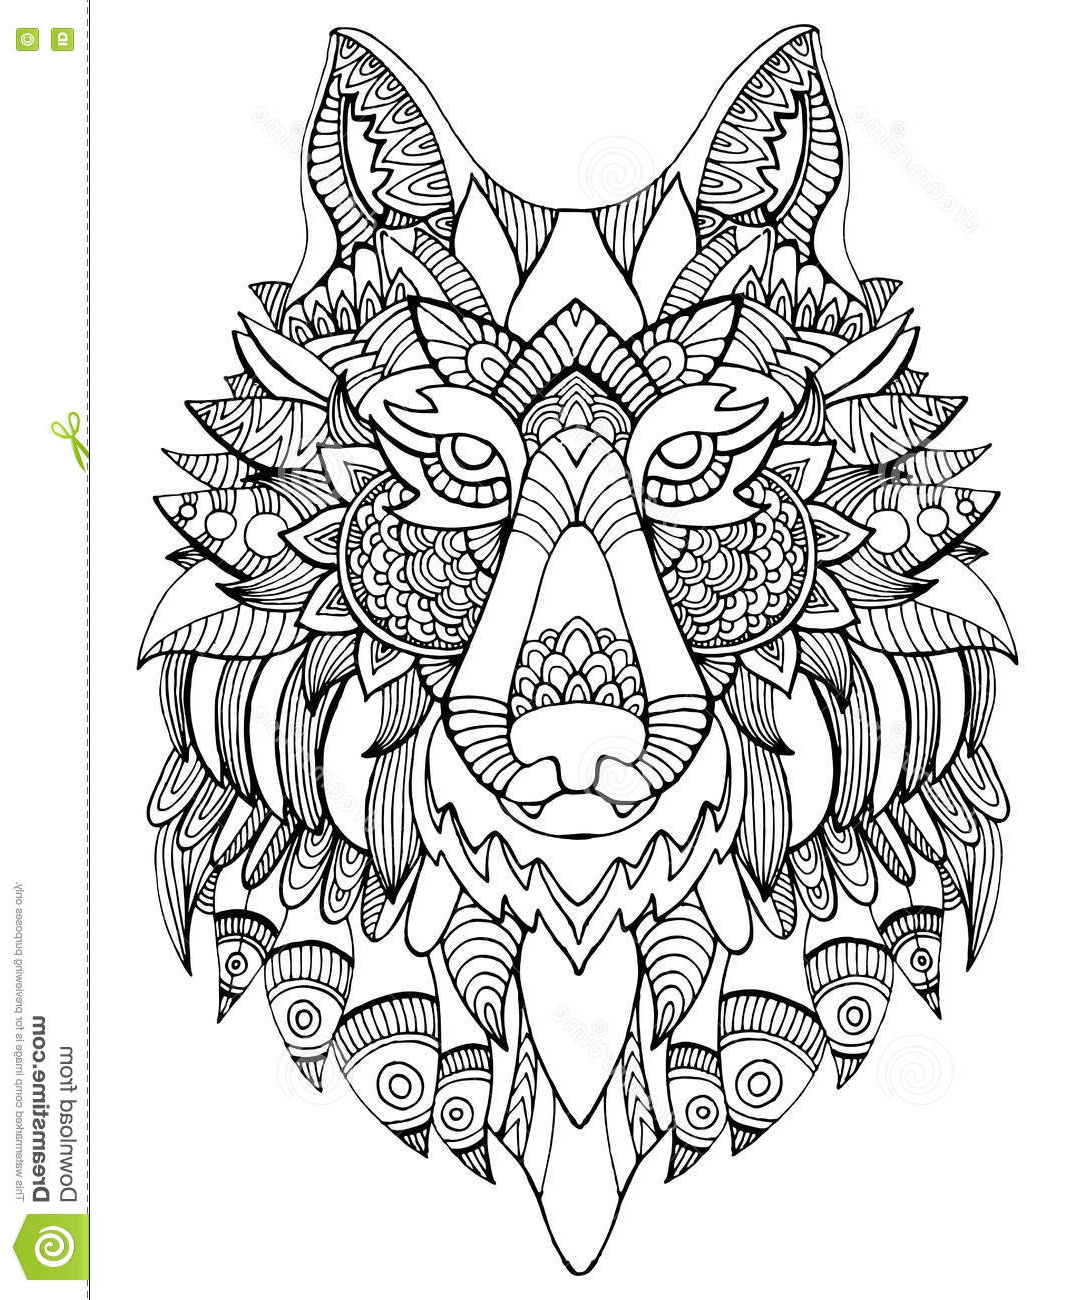 illustration stock livre de coloriage de loup pour l illustration de vecteur d adultes image